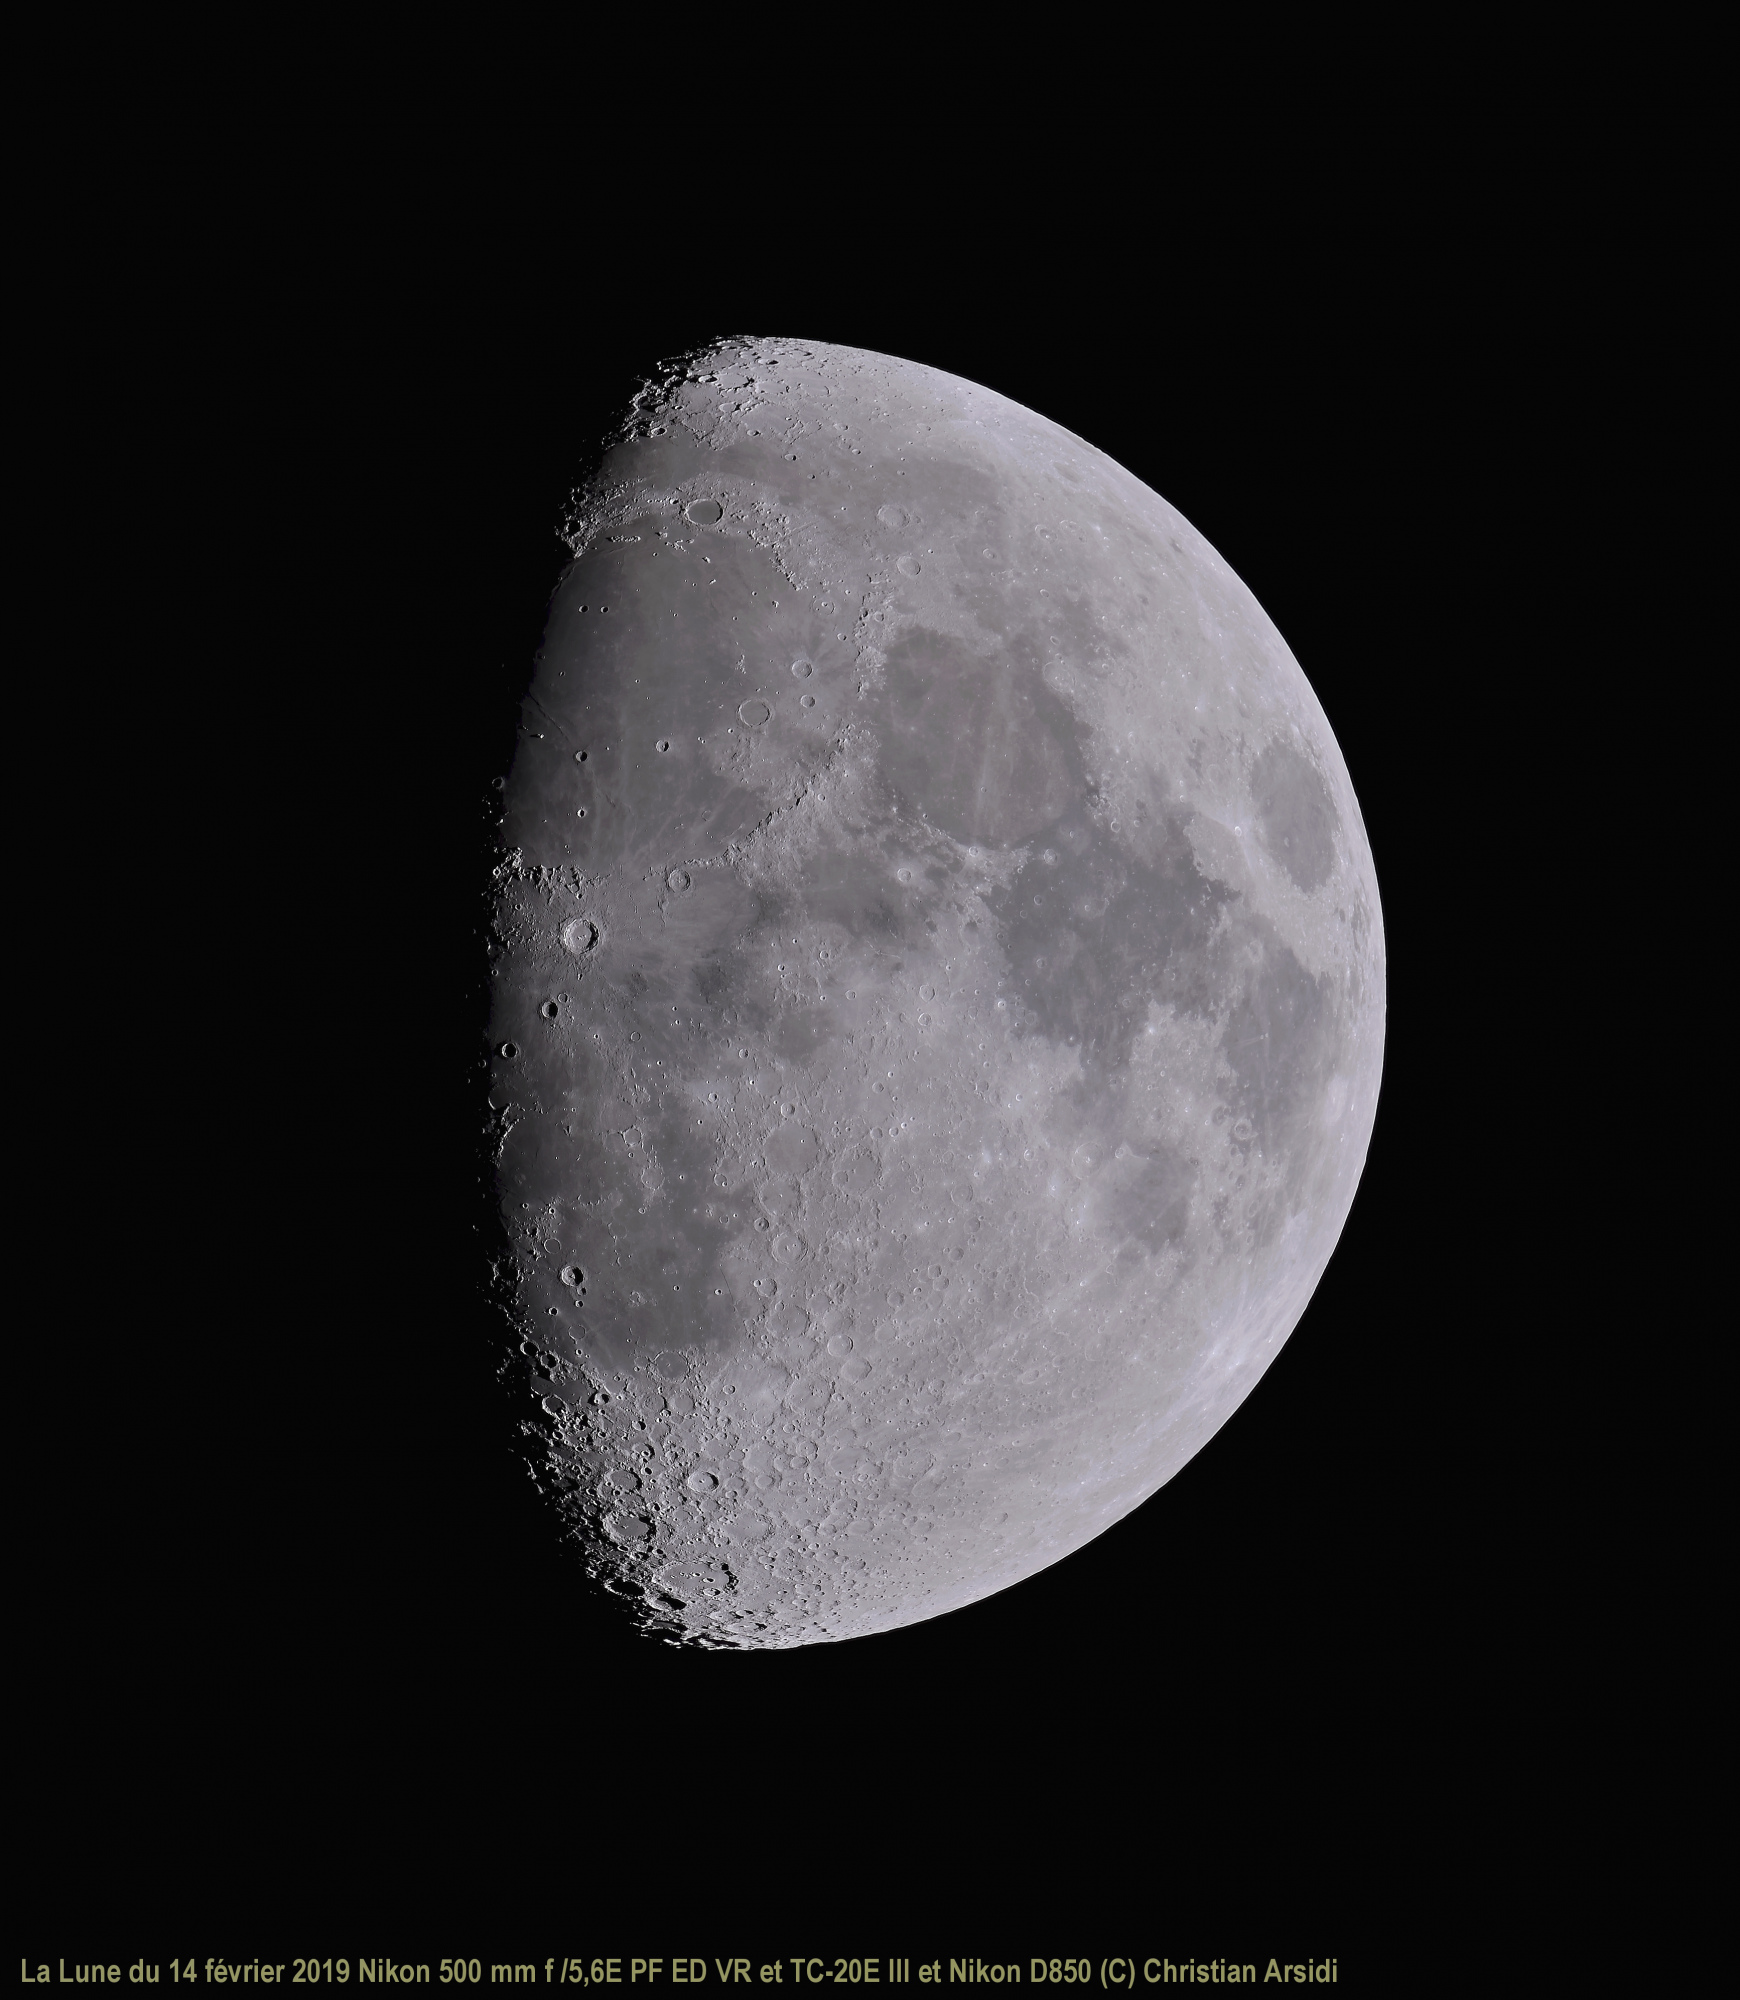 La Lune 40 images Vancittert et MF V3 TTB recadrée BV JPEG.jpg